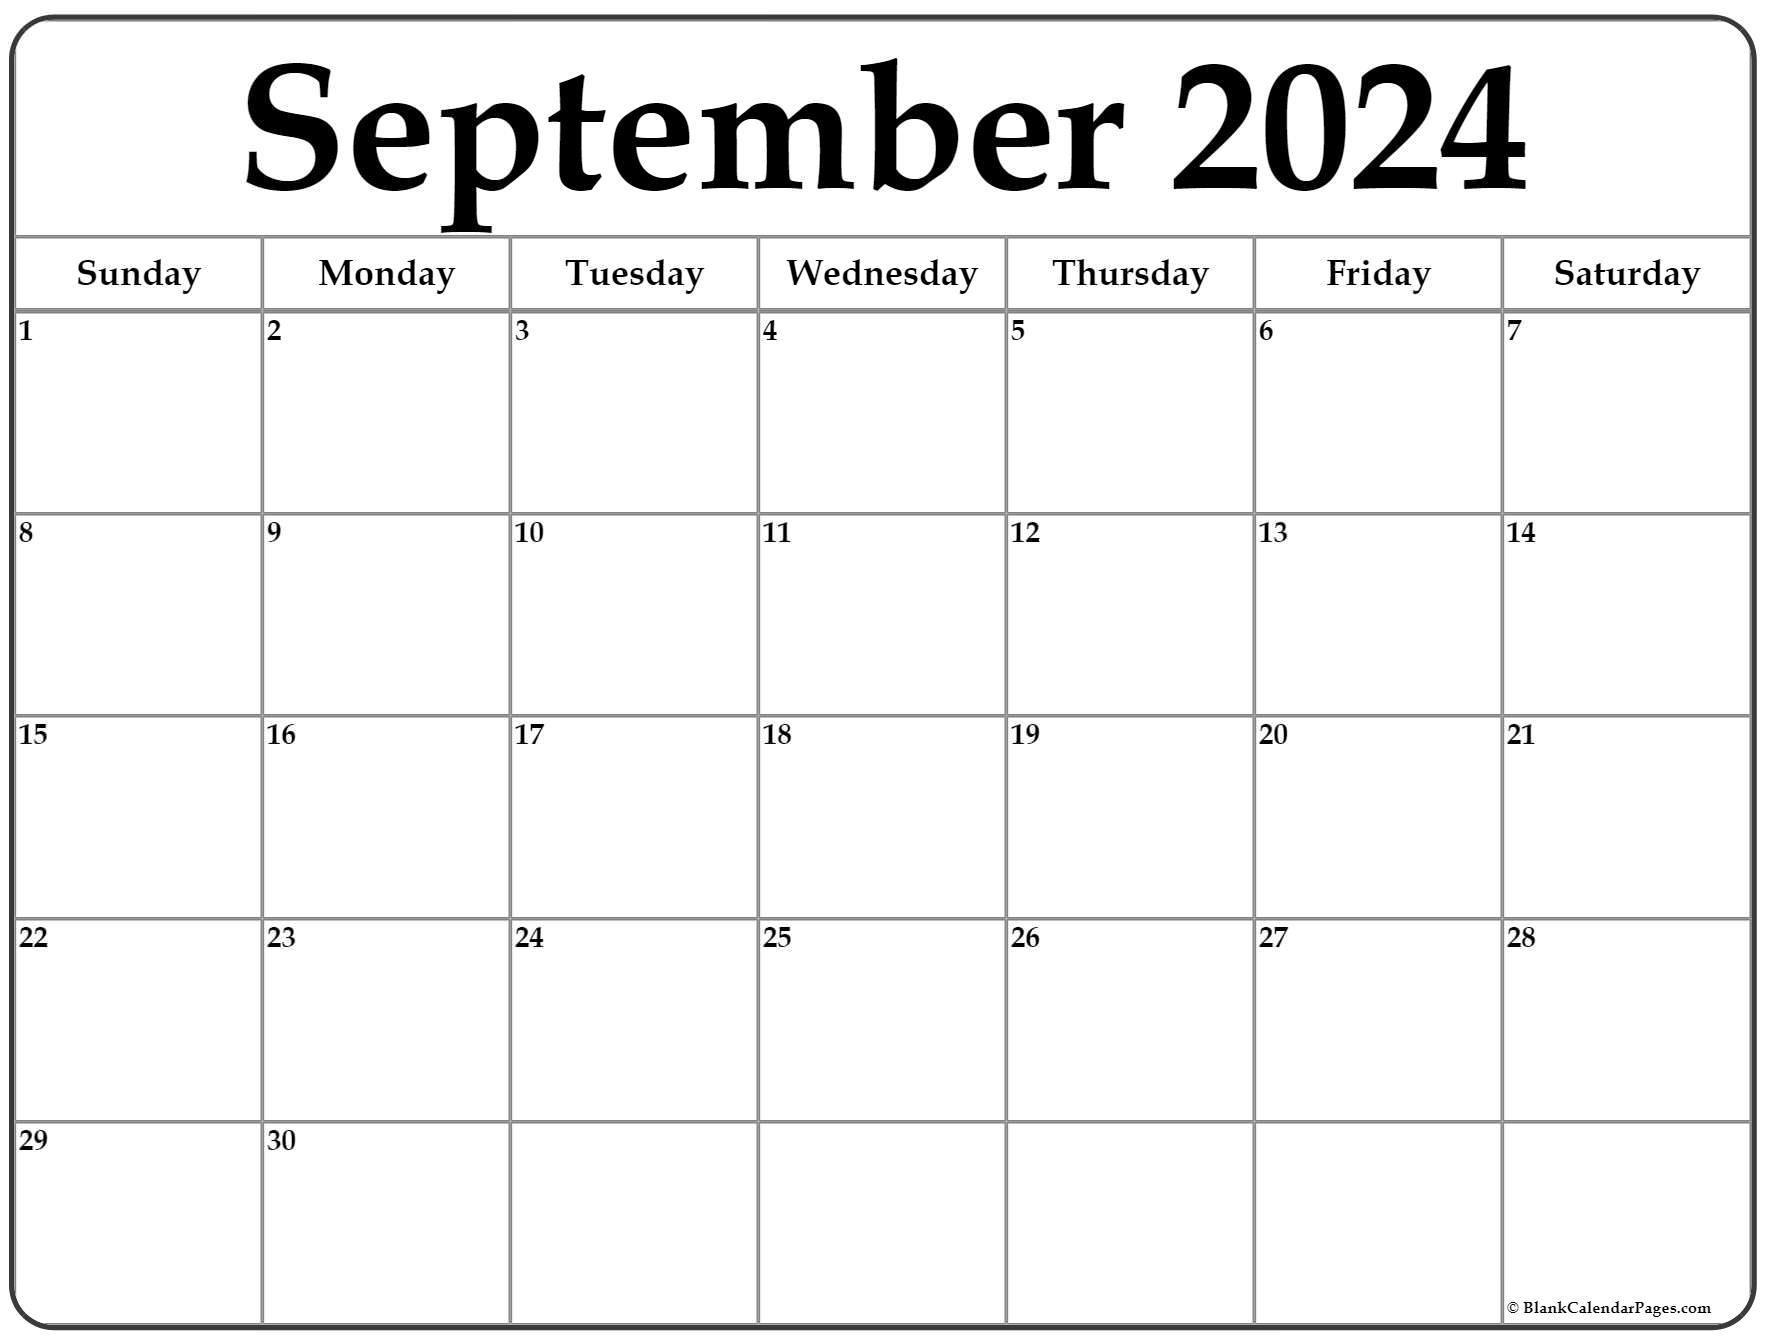 Free September 2022 Printable Calendar September 2022 Calendar | Free Printable Calendar Templates